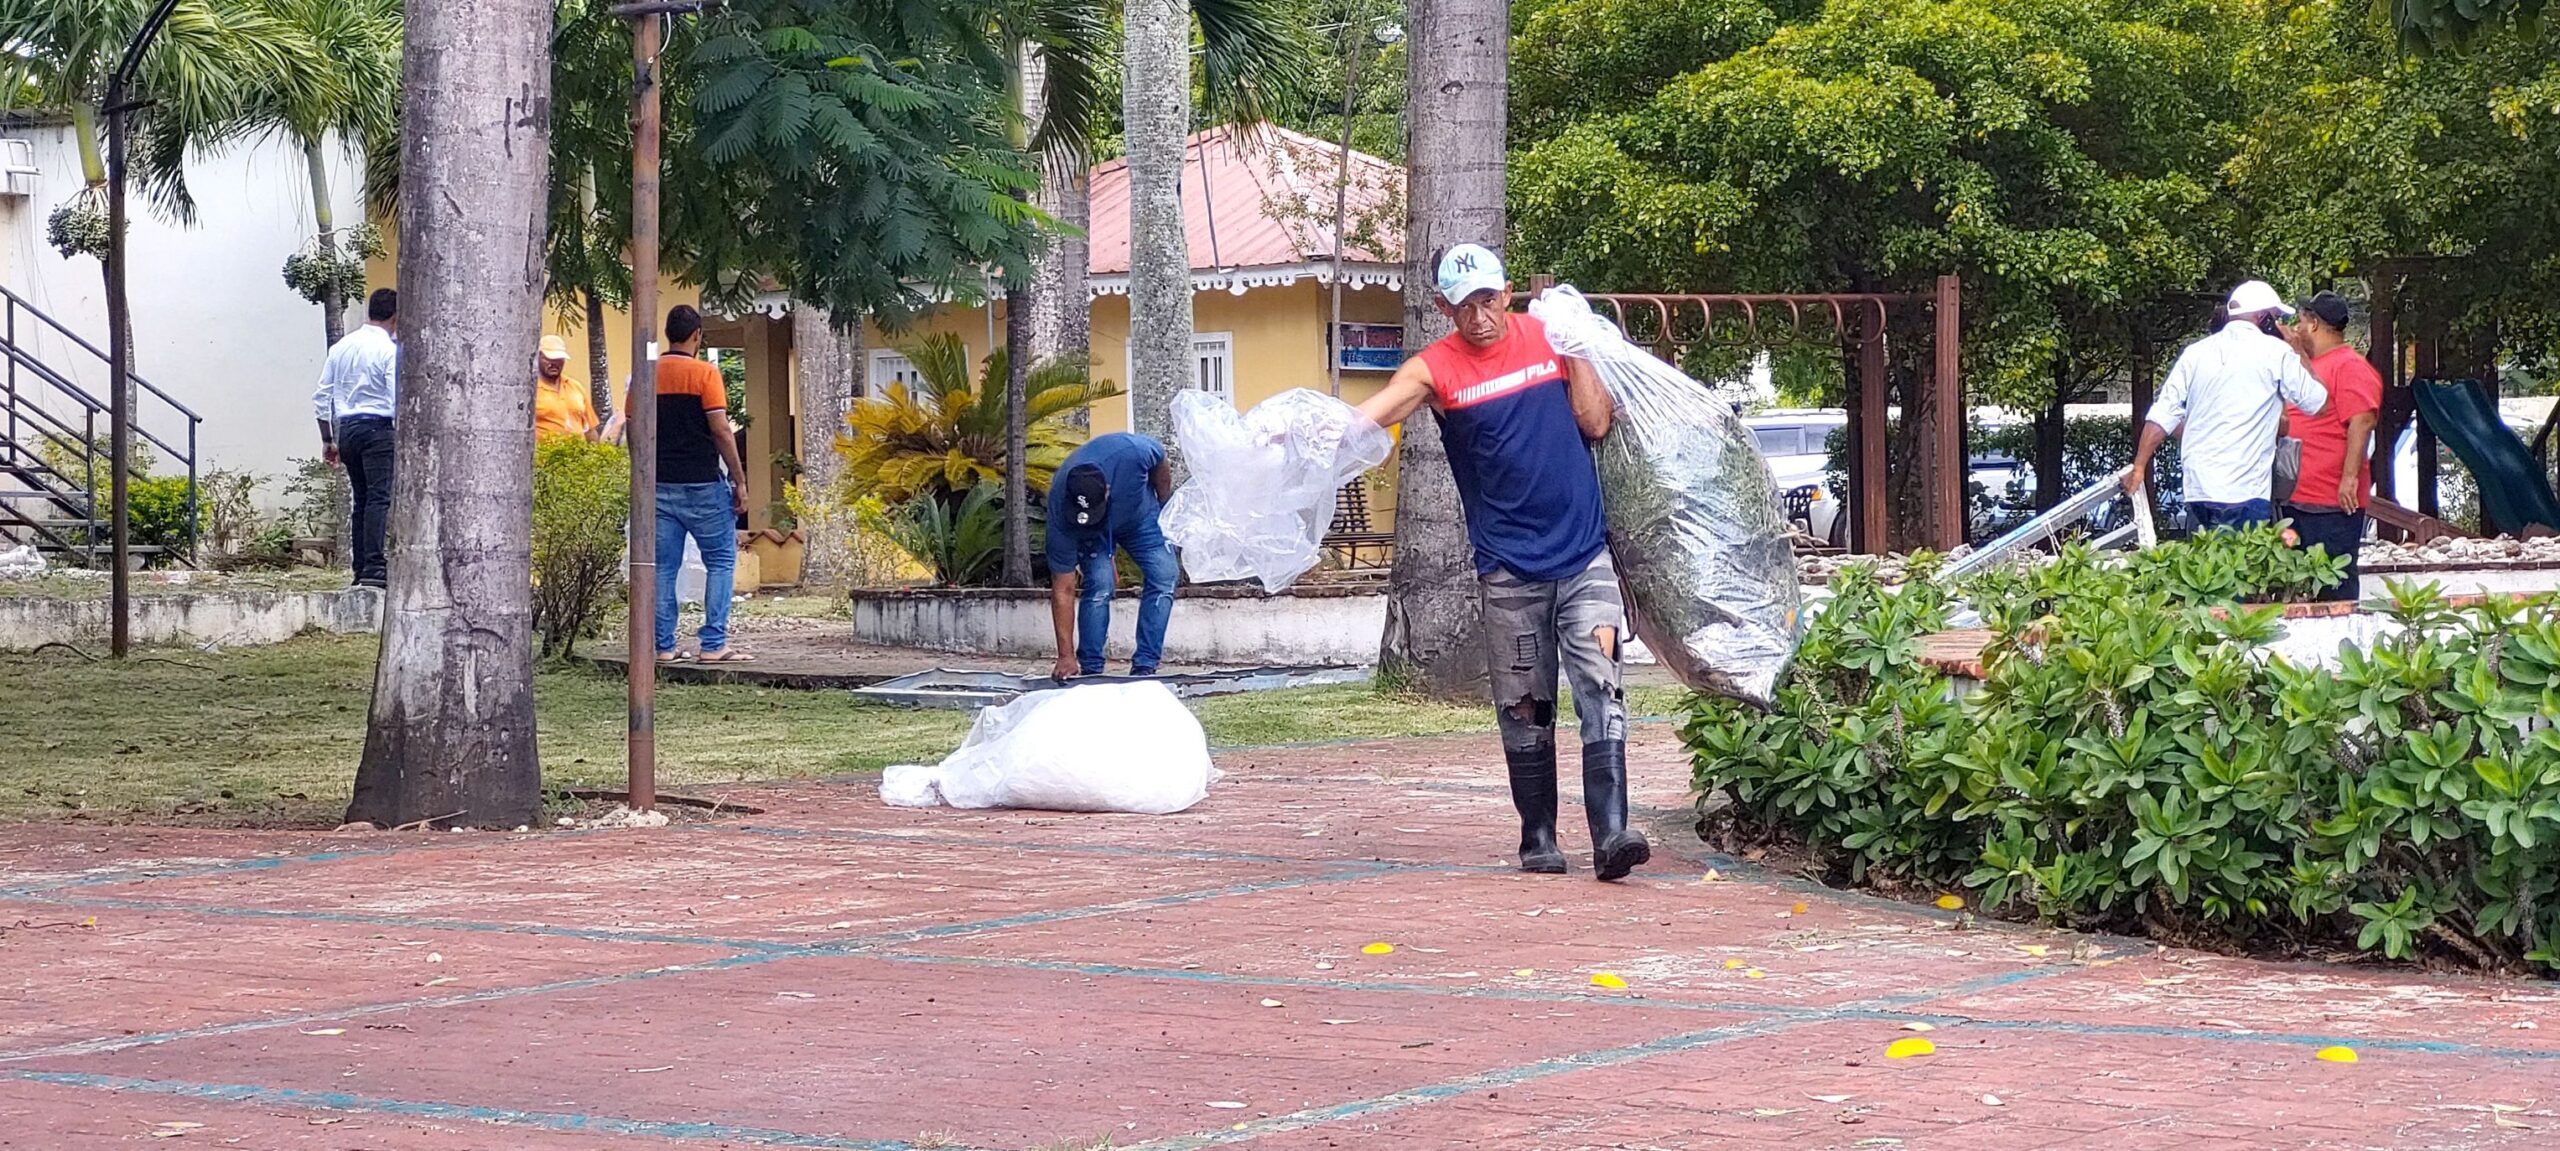 Por disposición del honorable alcalde Wilfredo Olivences, desde tempranas horas, Brigadas de Ornato del ayuntamiento municipal de Sosúa, realizan poda de árboles y acondicionamiento a los parques del Municipio,